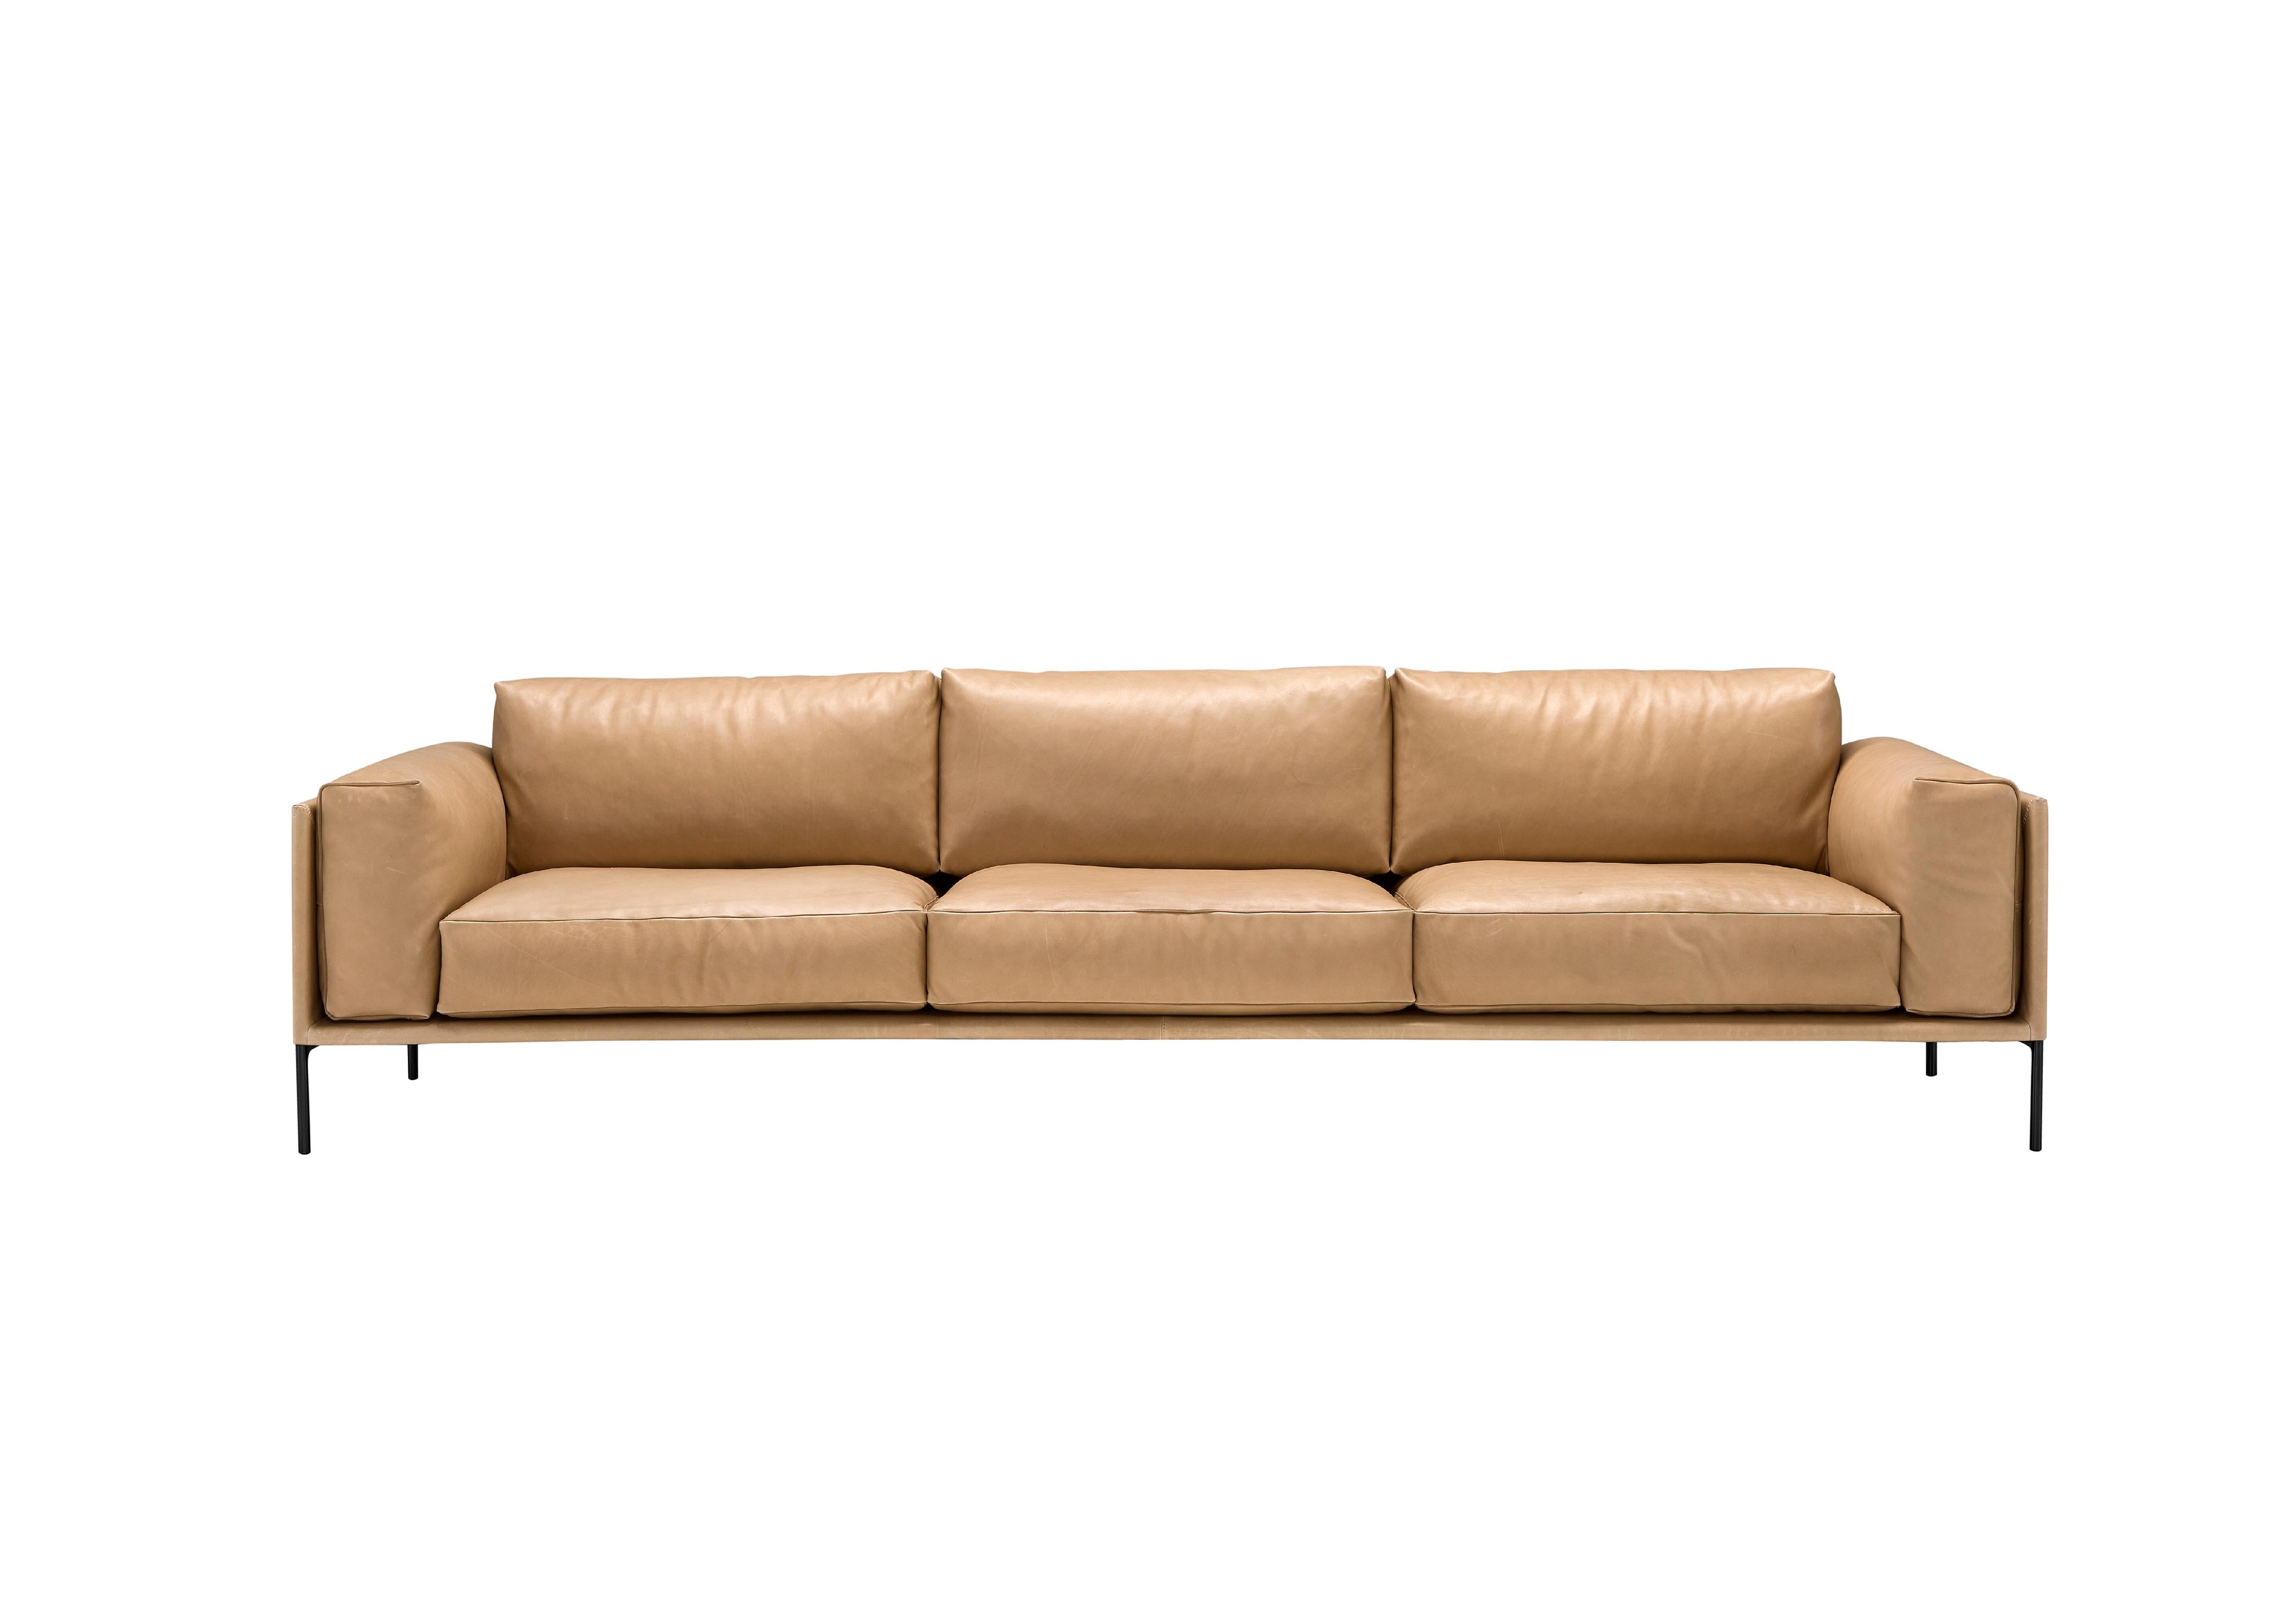 Italian Contemporary Leather Sofa 'Giorgio' by Amura Lab, Daino 04 For Sale